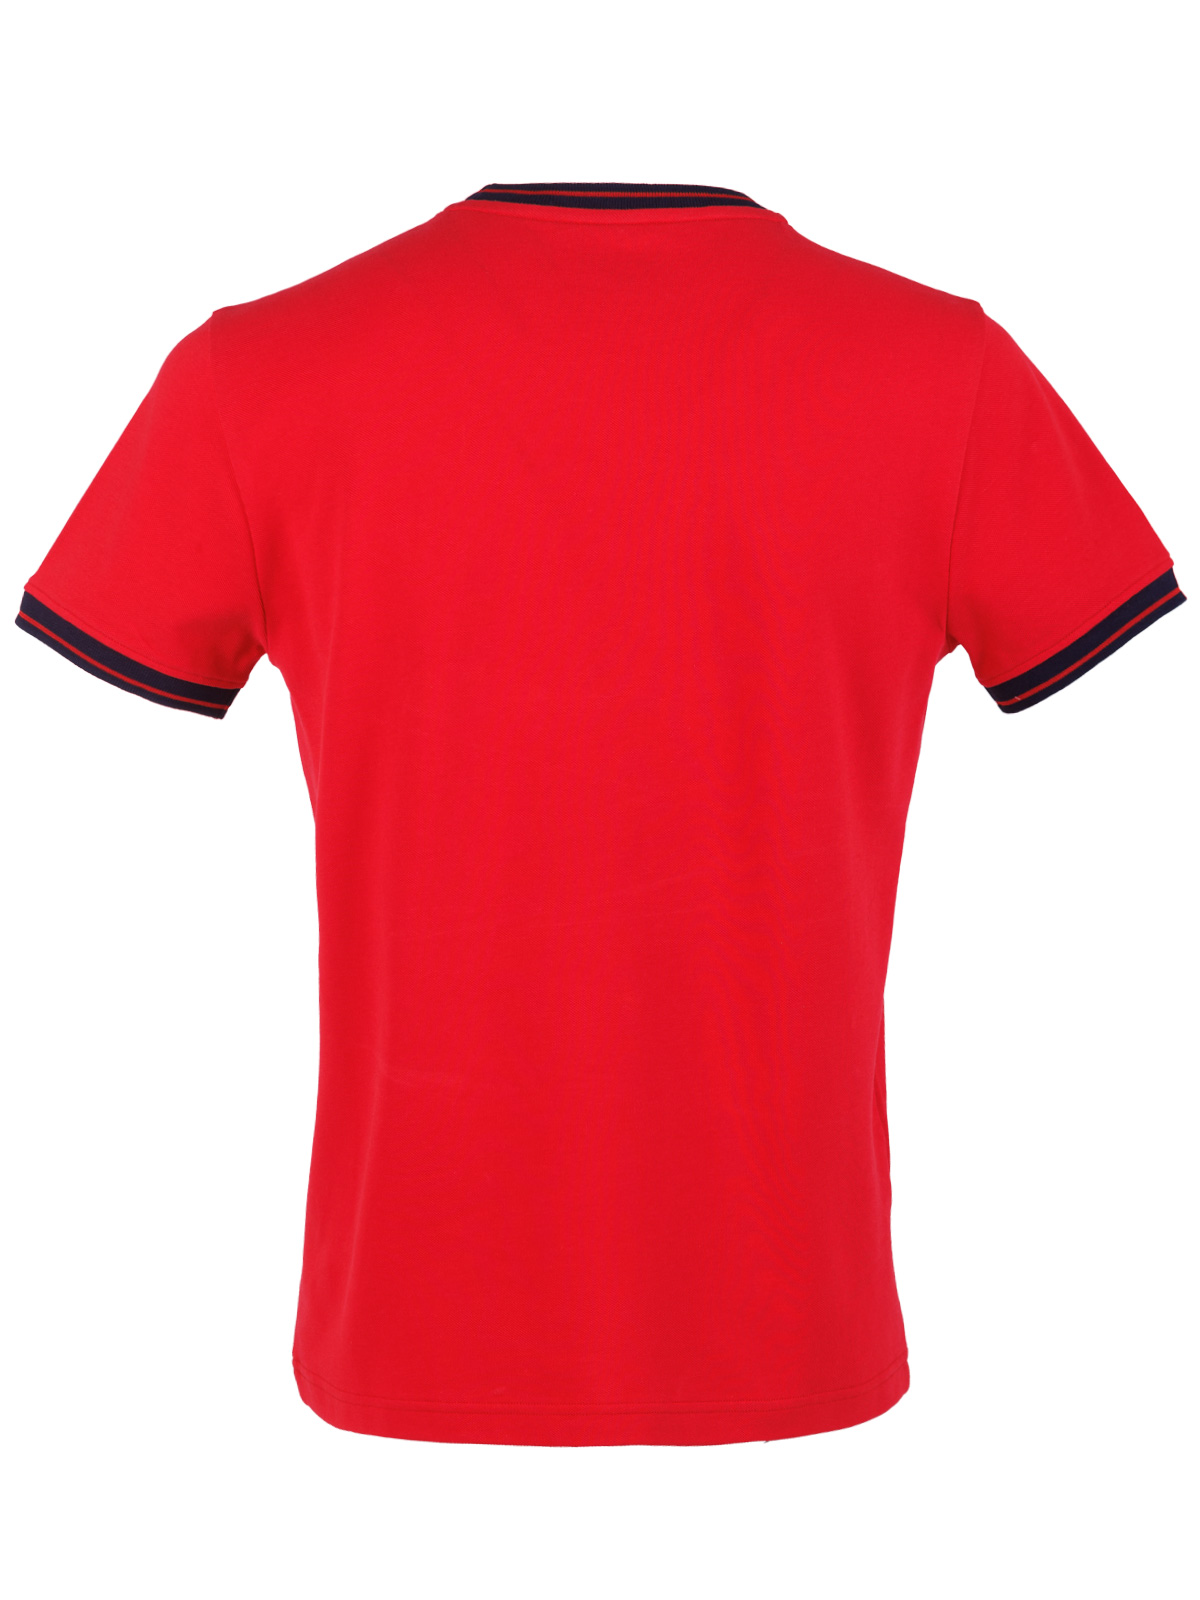 Μπλούζα σε κόκκινο χρώμα με paisley - 95373 € 27.56 img2